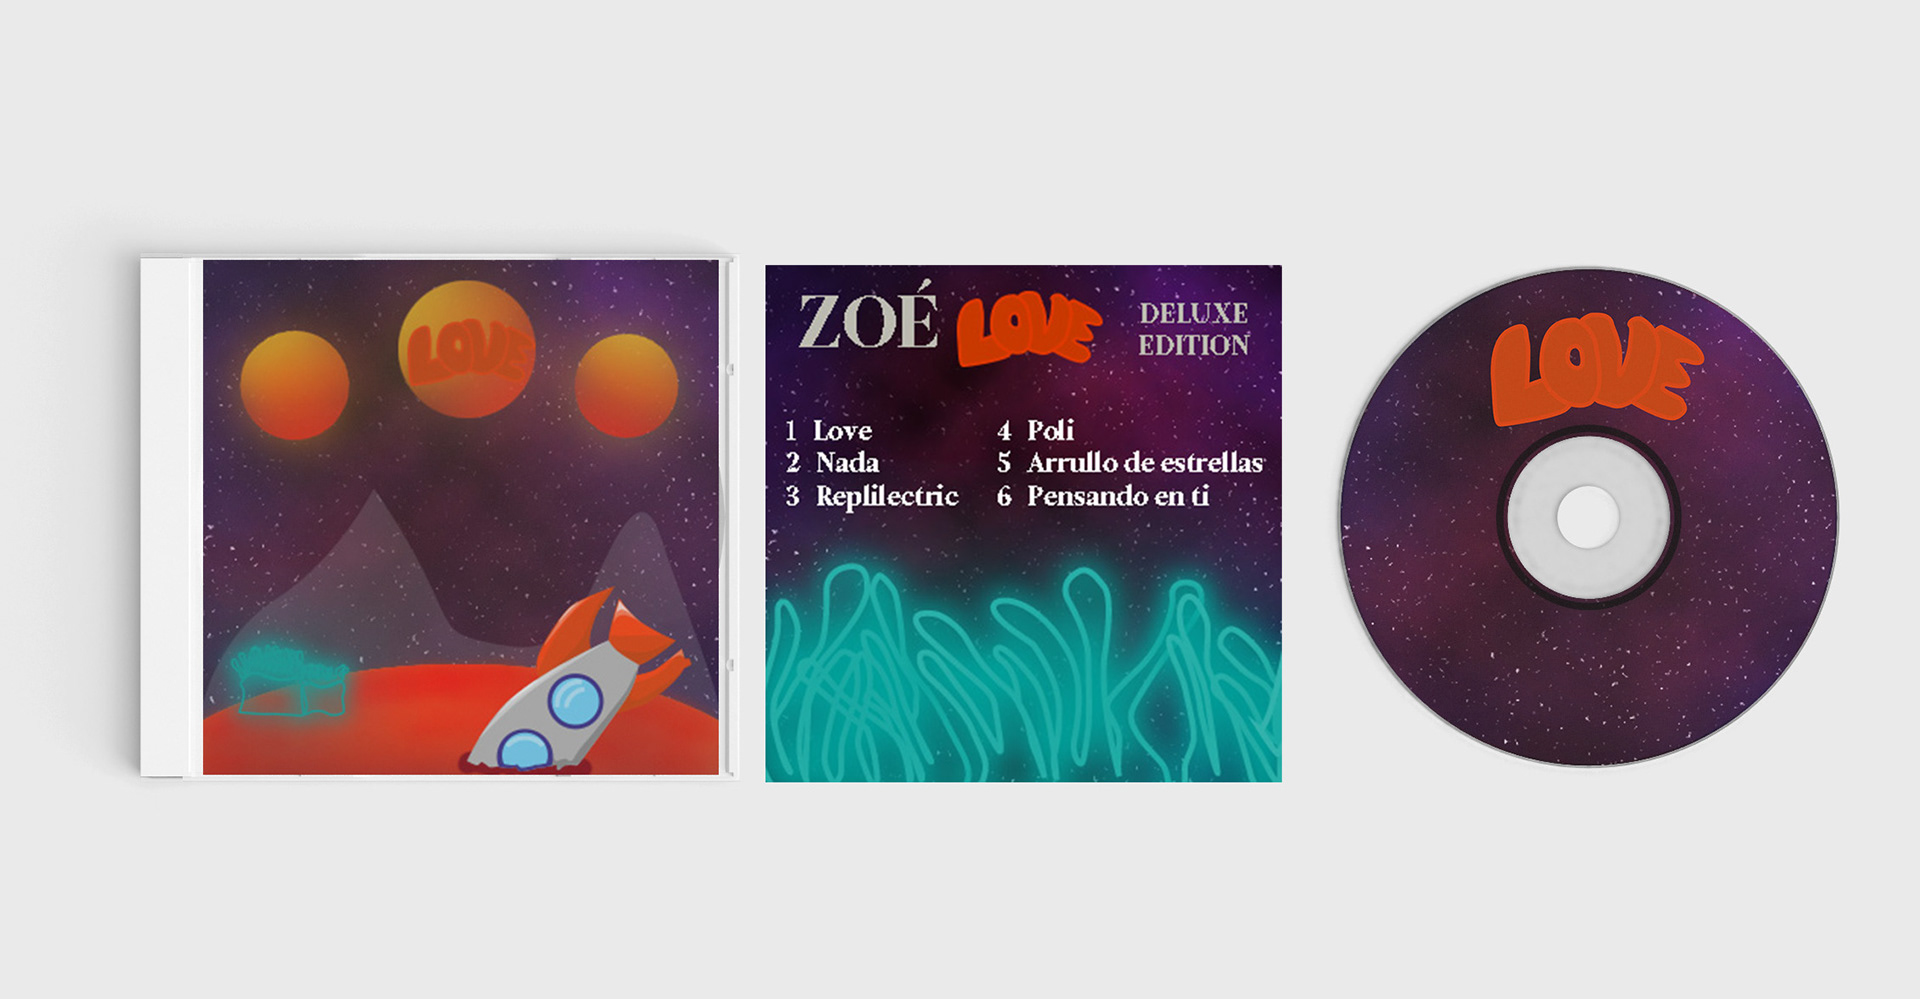 Fer Fdez - Rediseño portada de disco banda Zoé